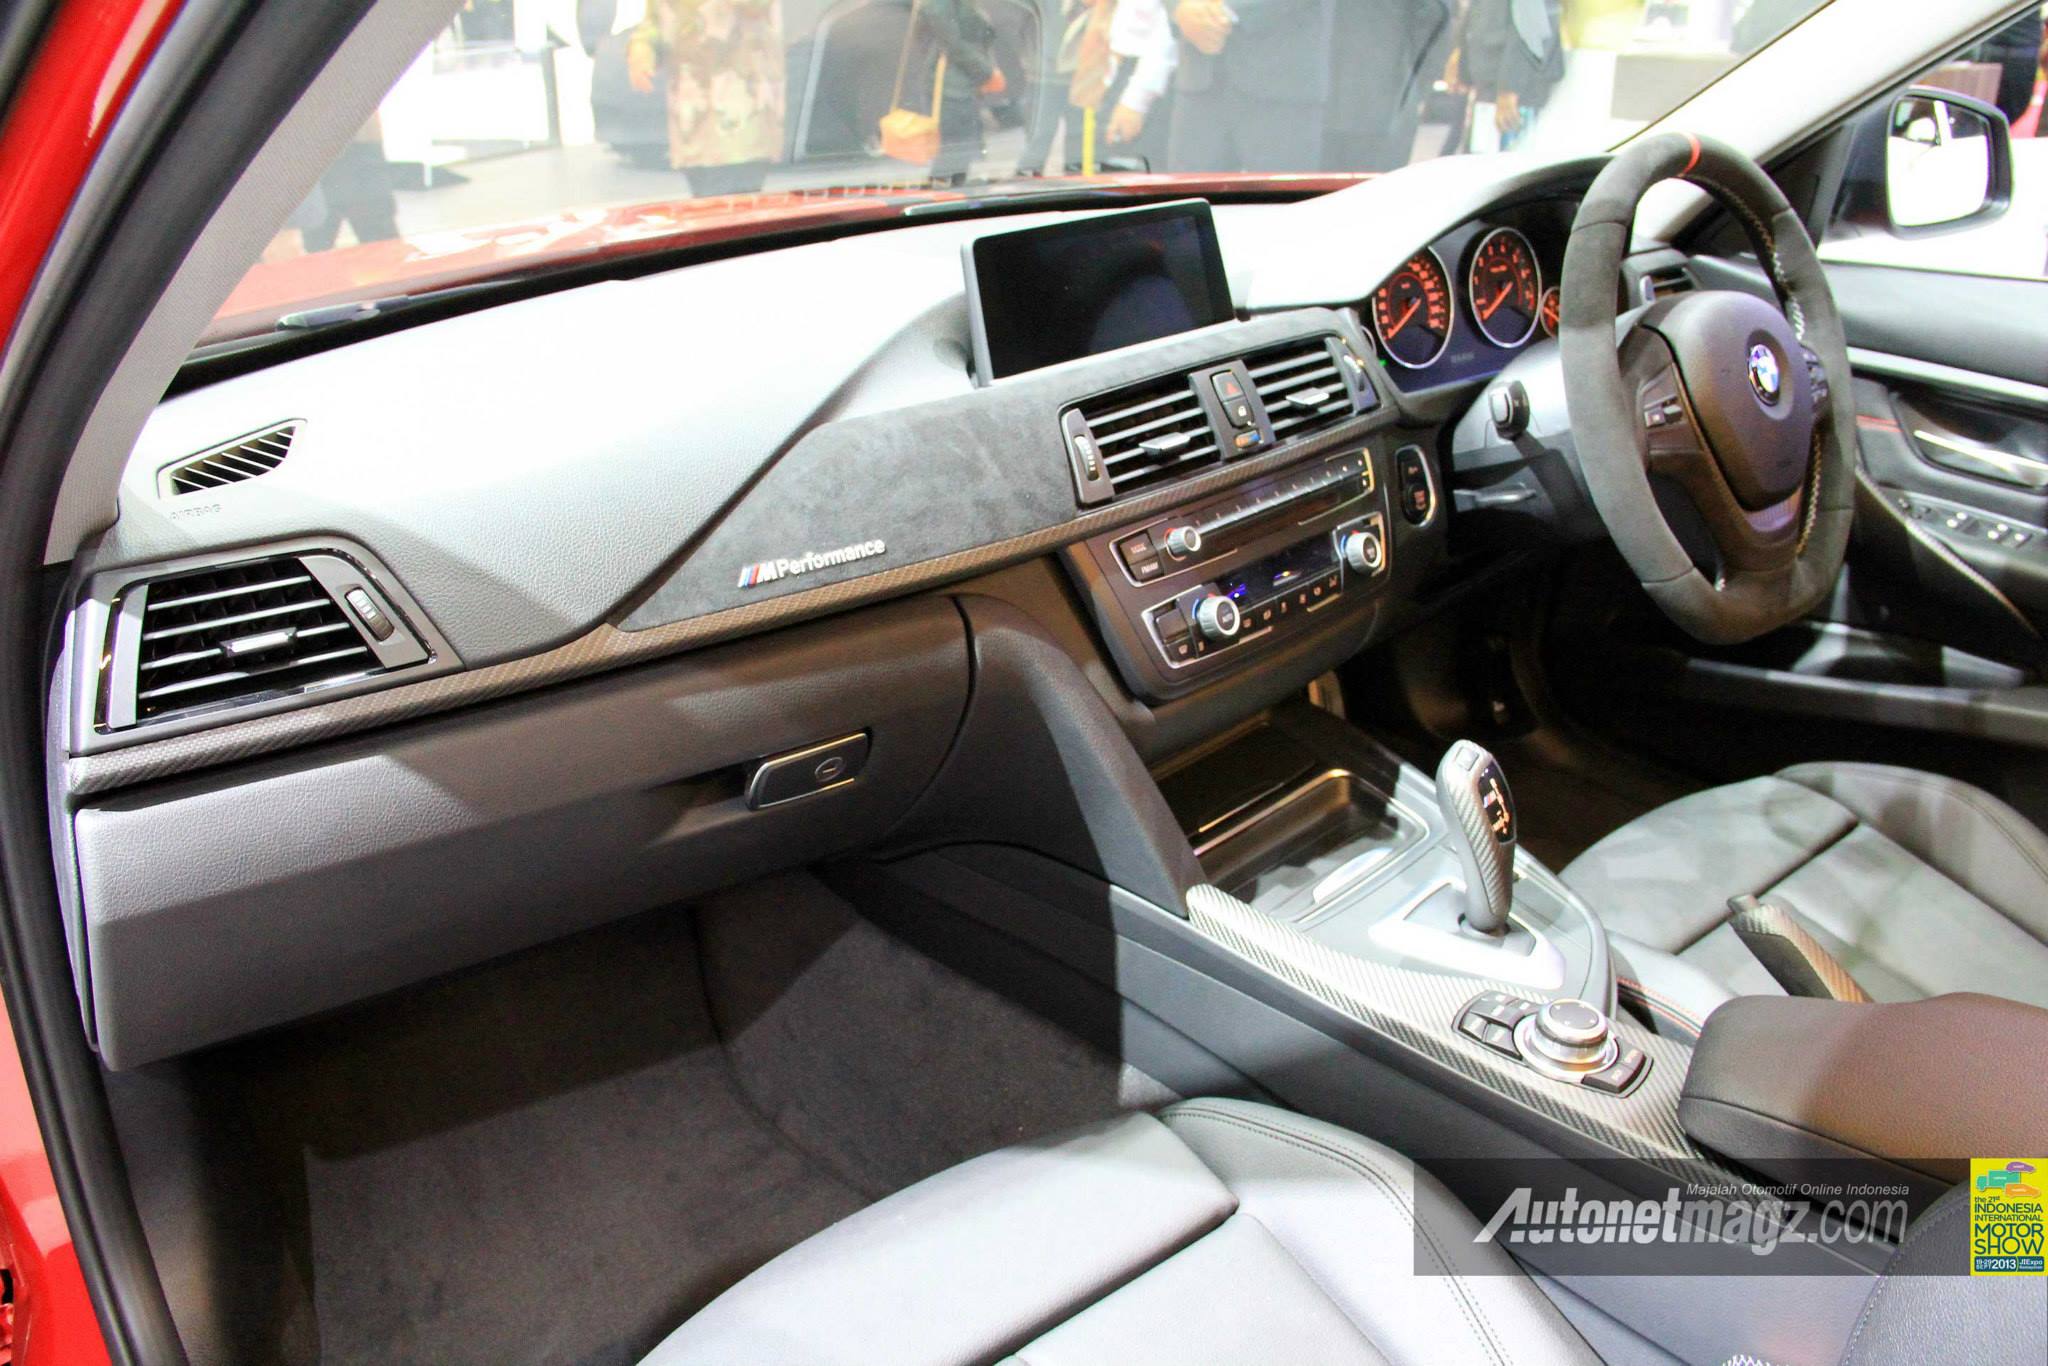  Interior  BMW 320i Sport  Indonesia AutonetMagz Review 